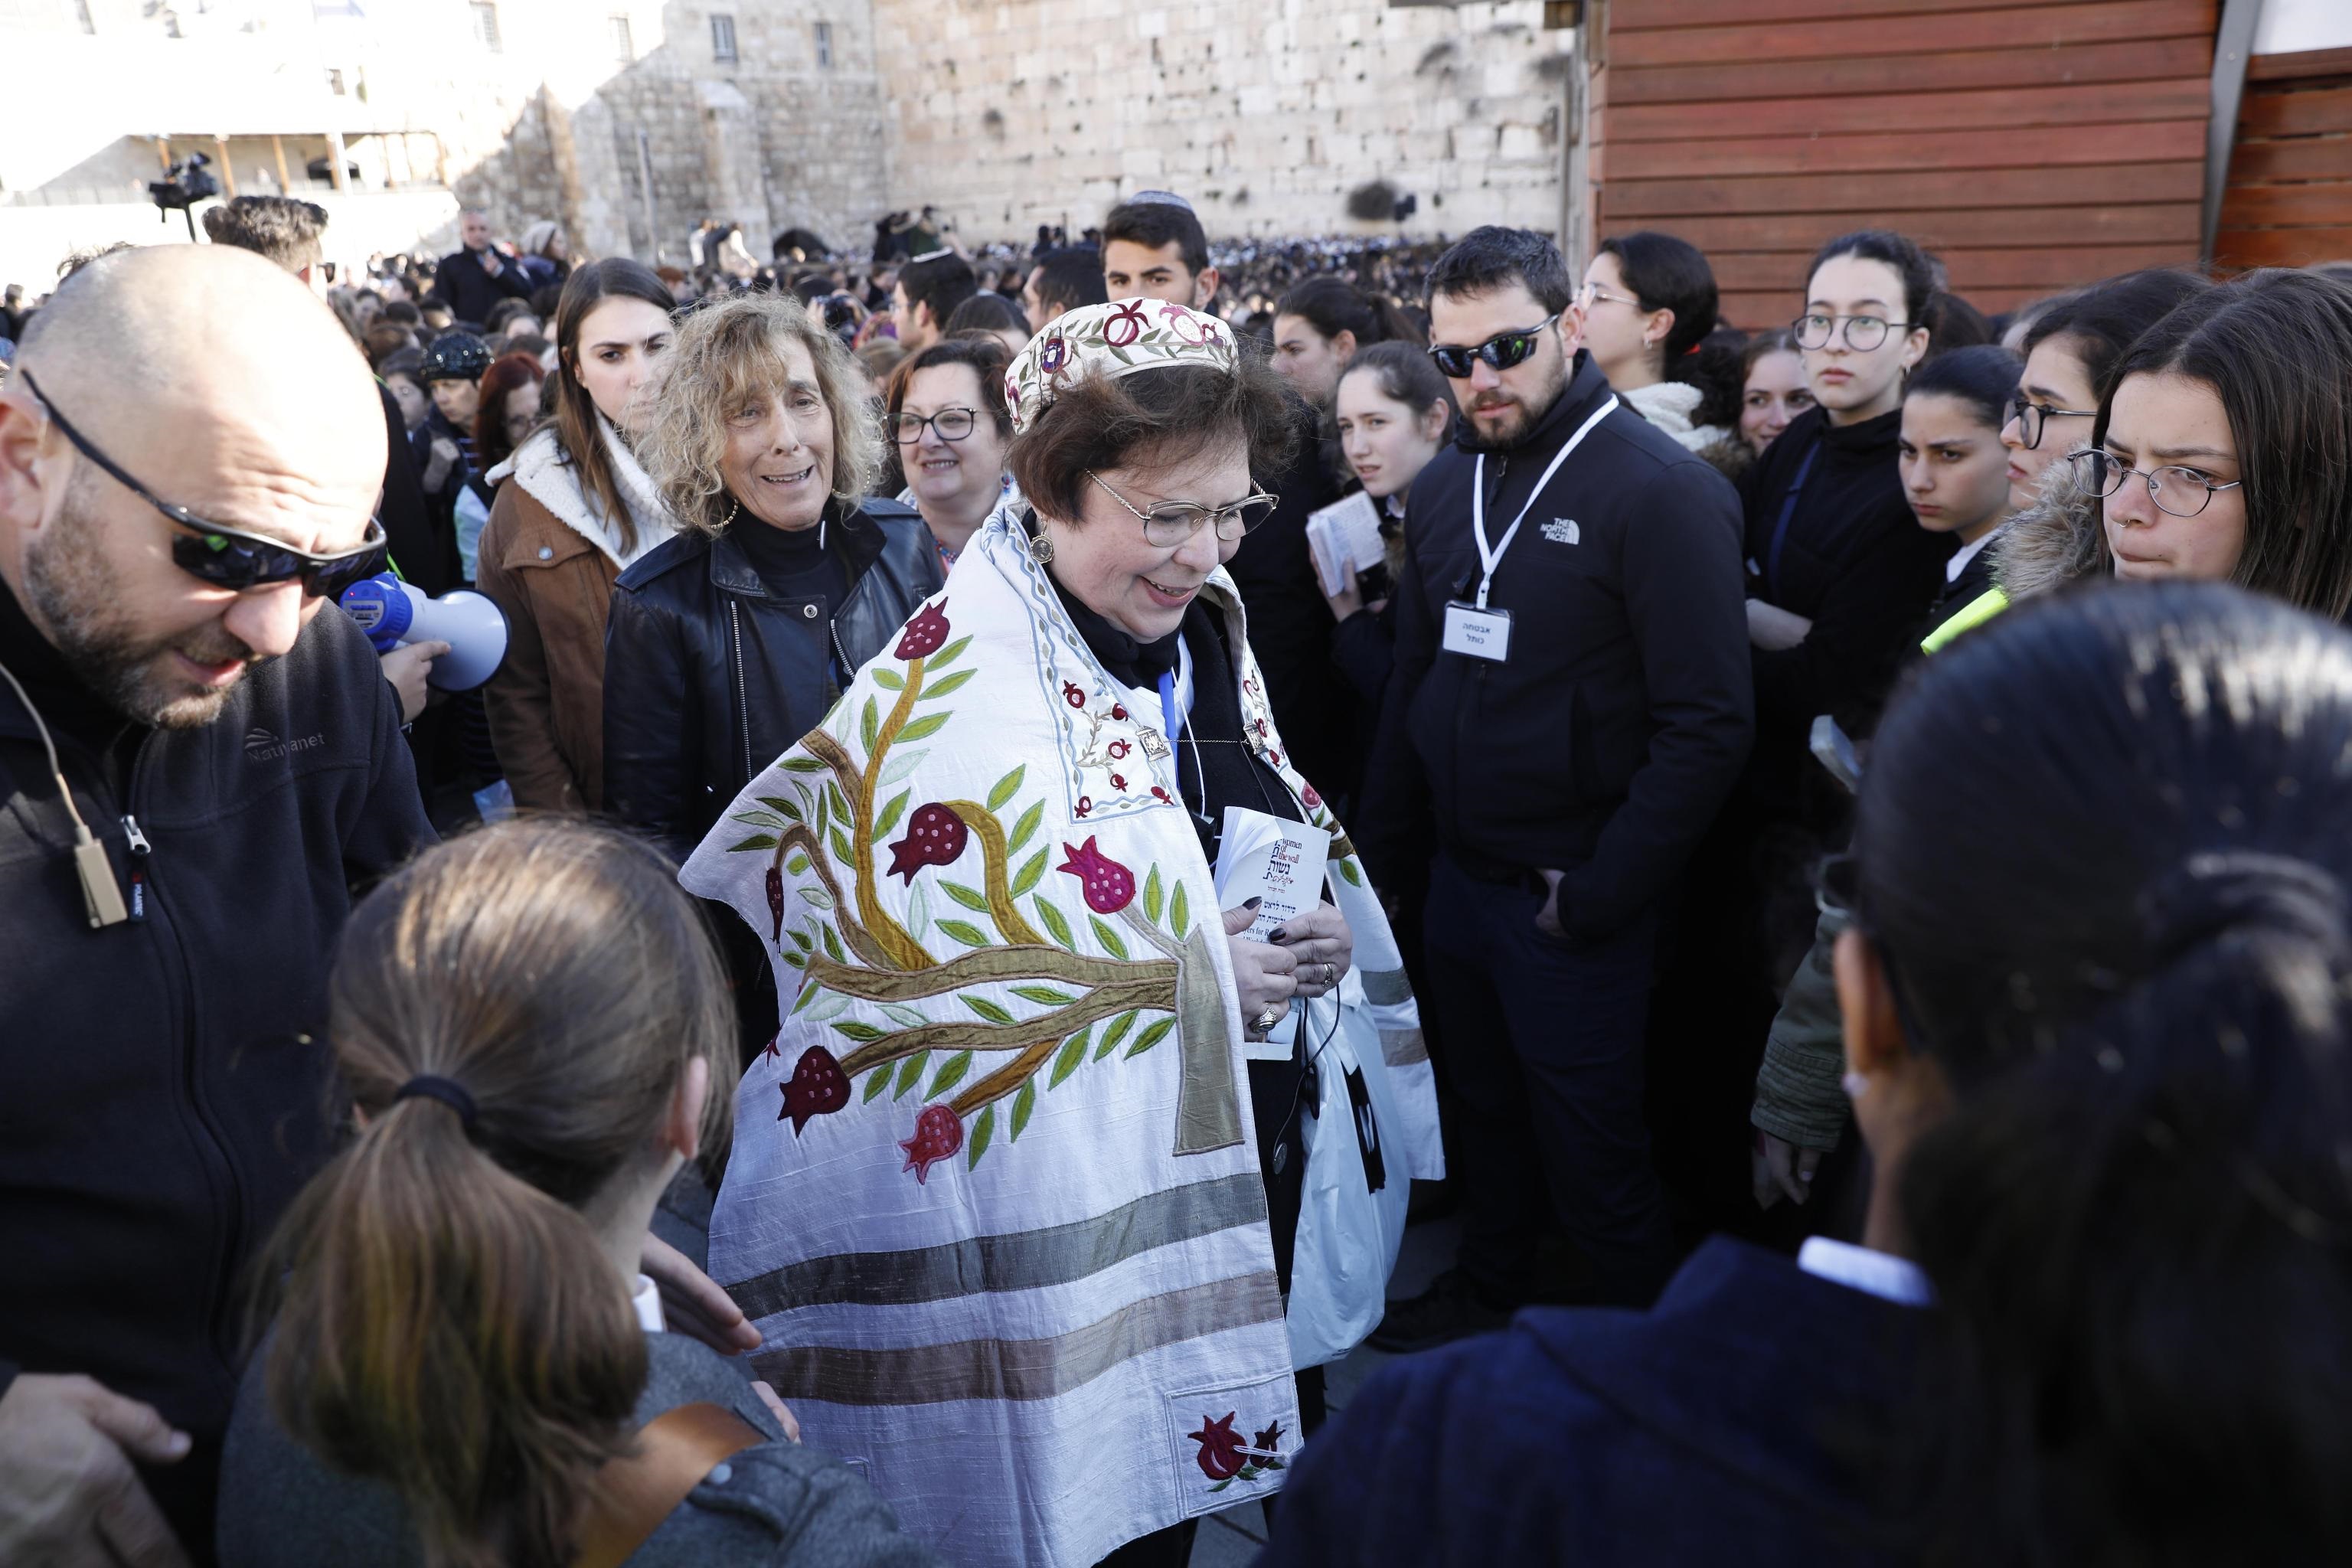 Le donne del "Women of the Wall" con Torah tallit, tefillin e kippah, costumi che secondo la tradizione ebraica sono riservati agli uomini